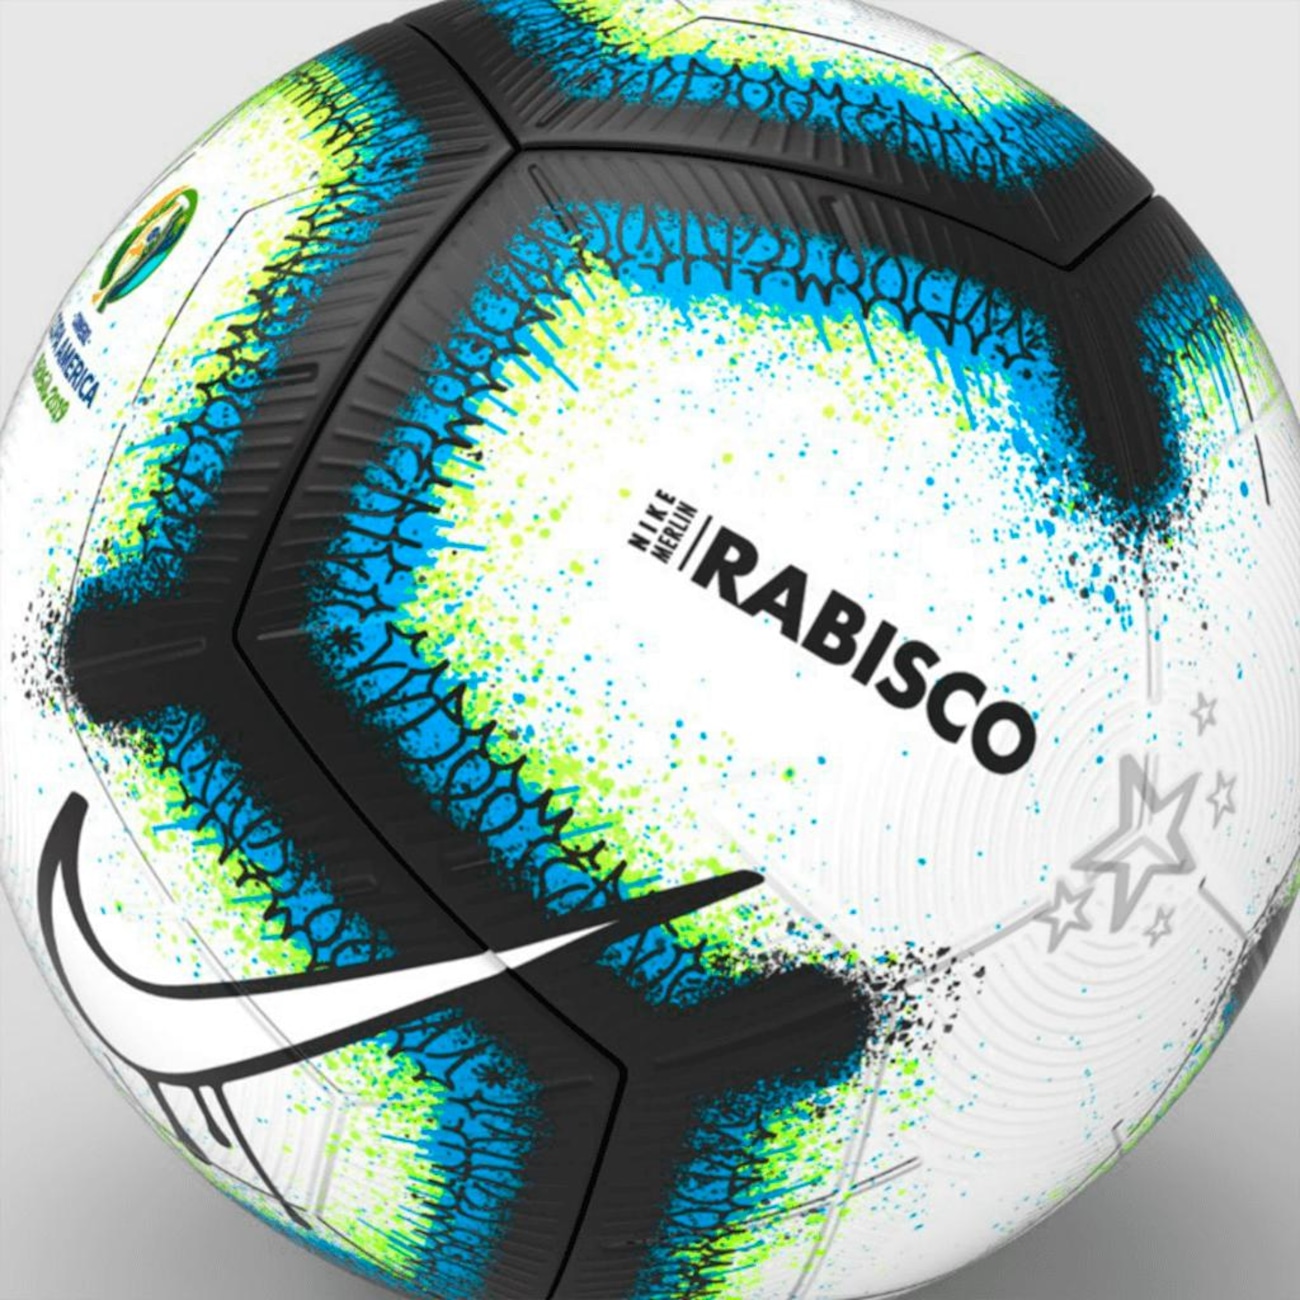 Bola de Futebol de Campo Copa América 2019 Sportcom - Amarela